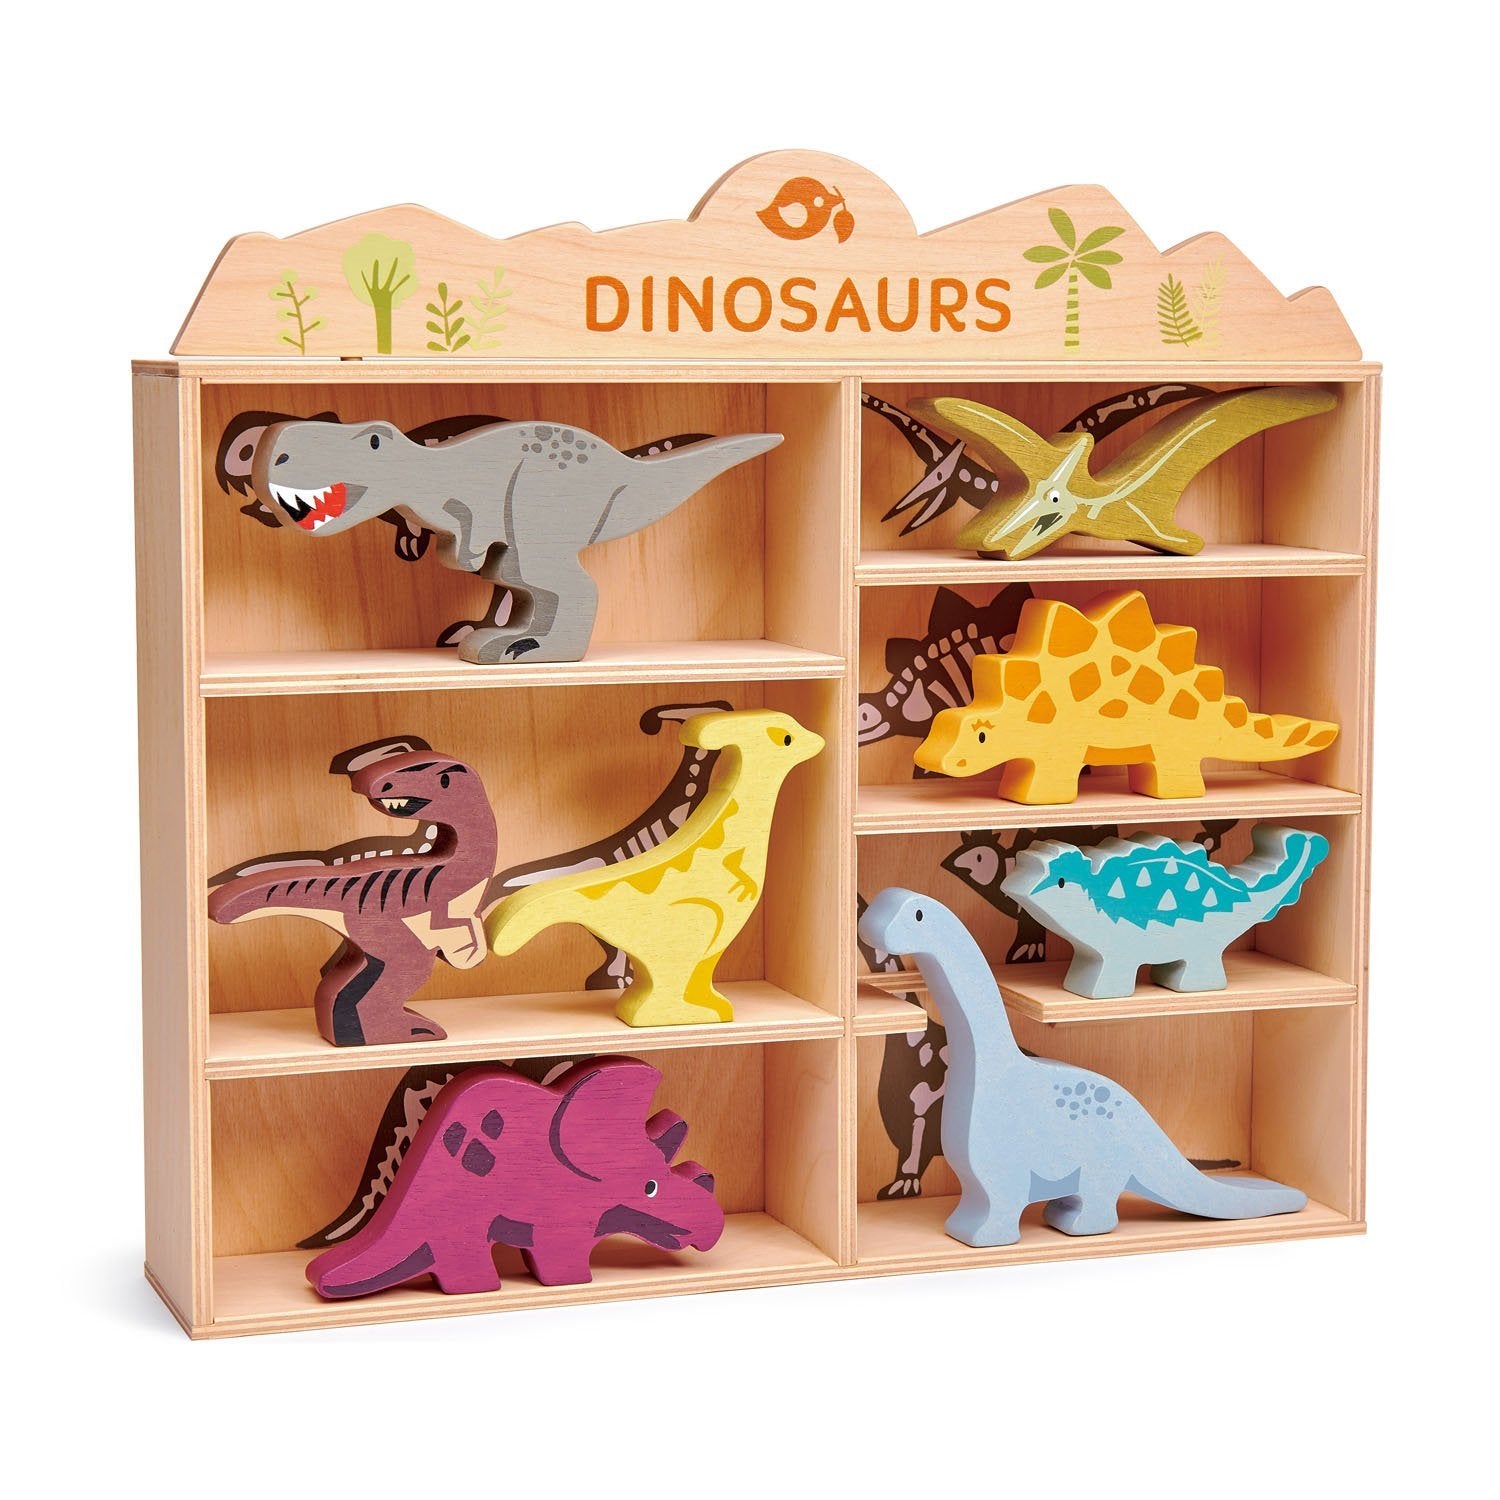 8 wooden Dinosaurs & Shelf